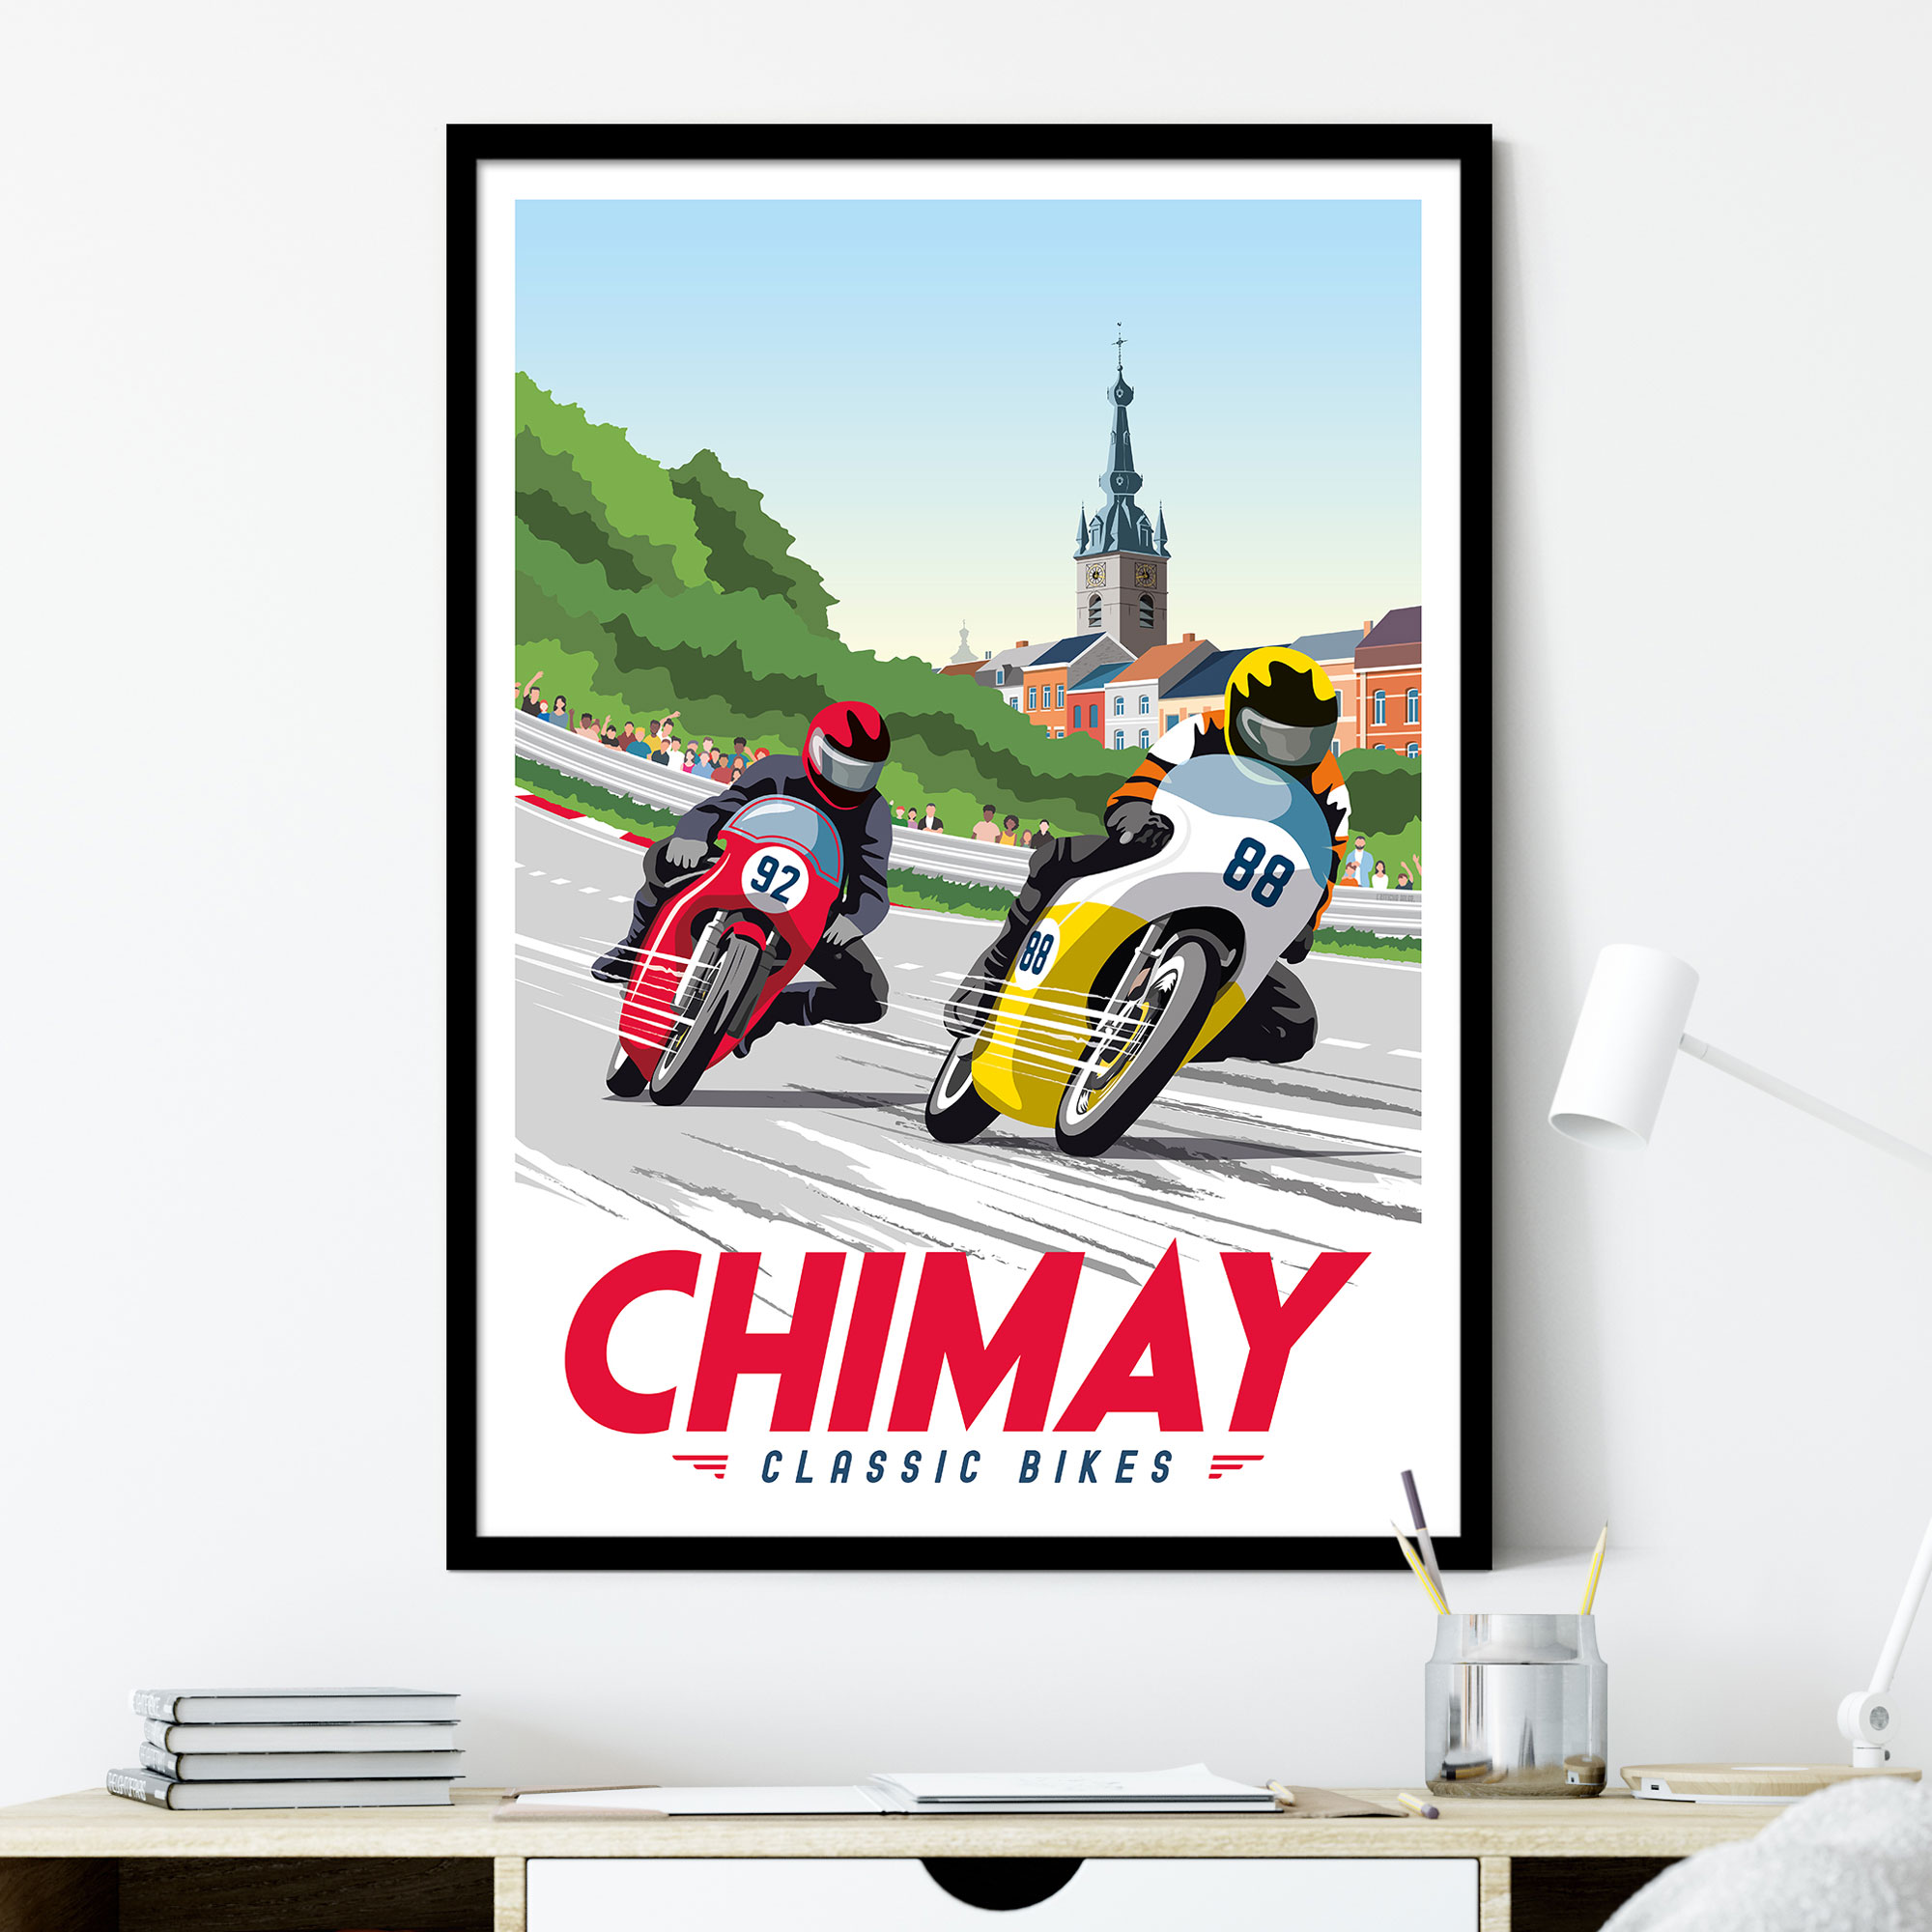 Chimay - Classic Bikes